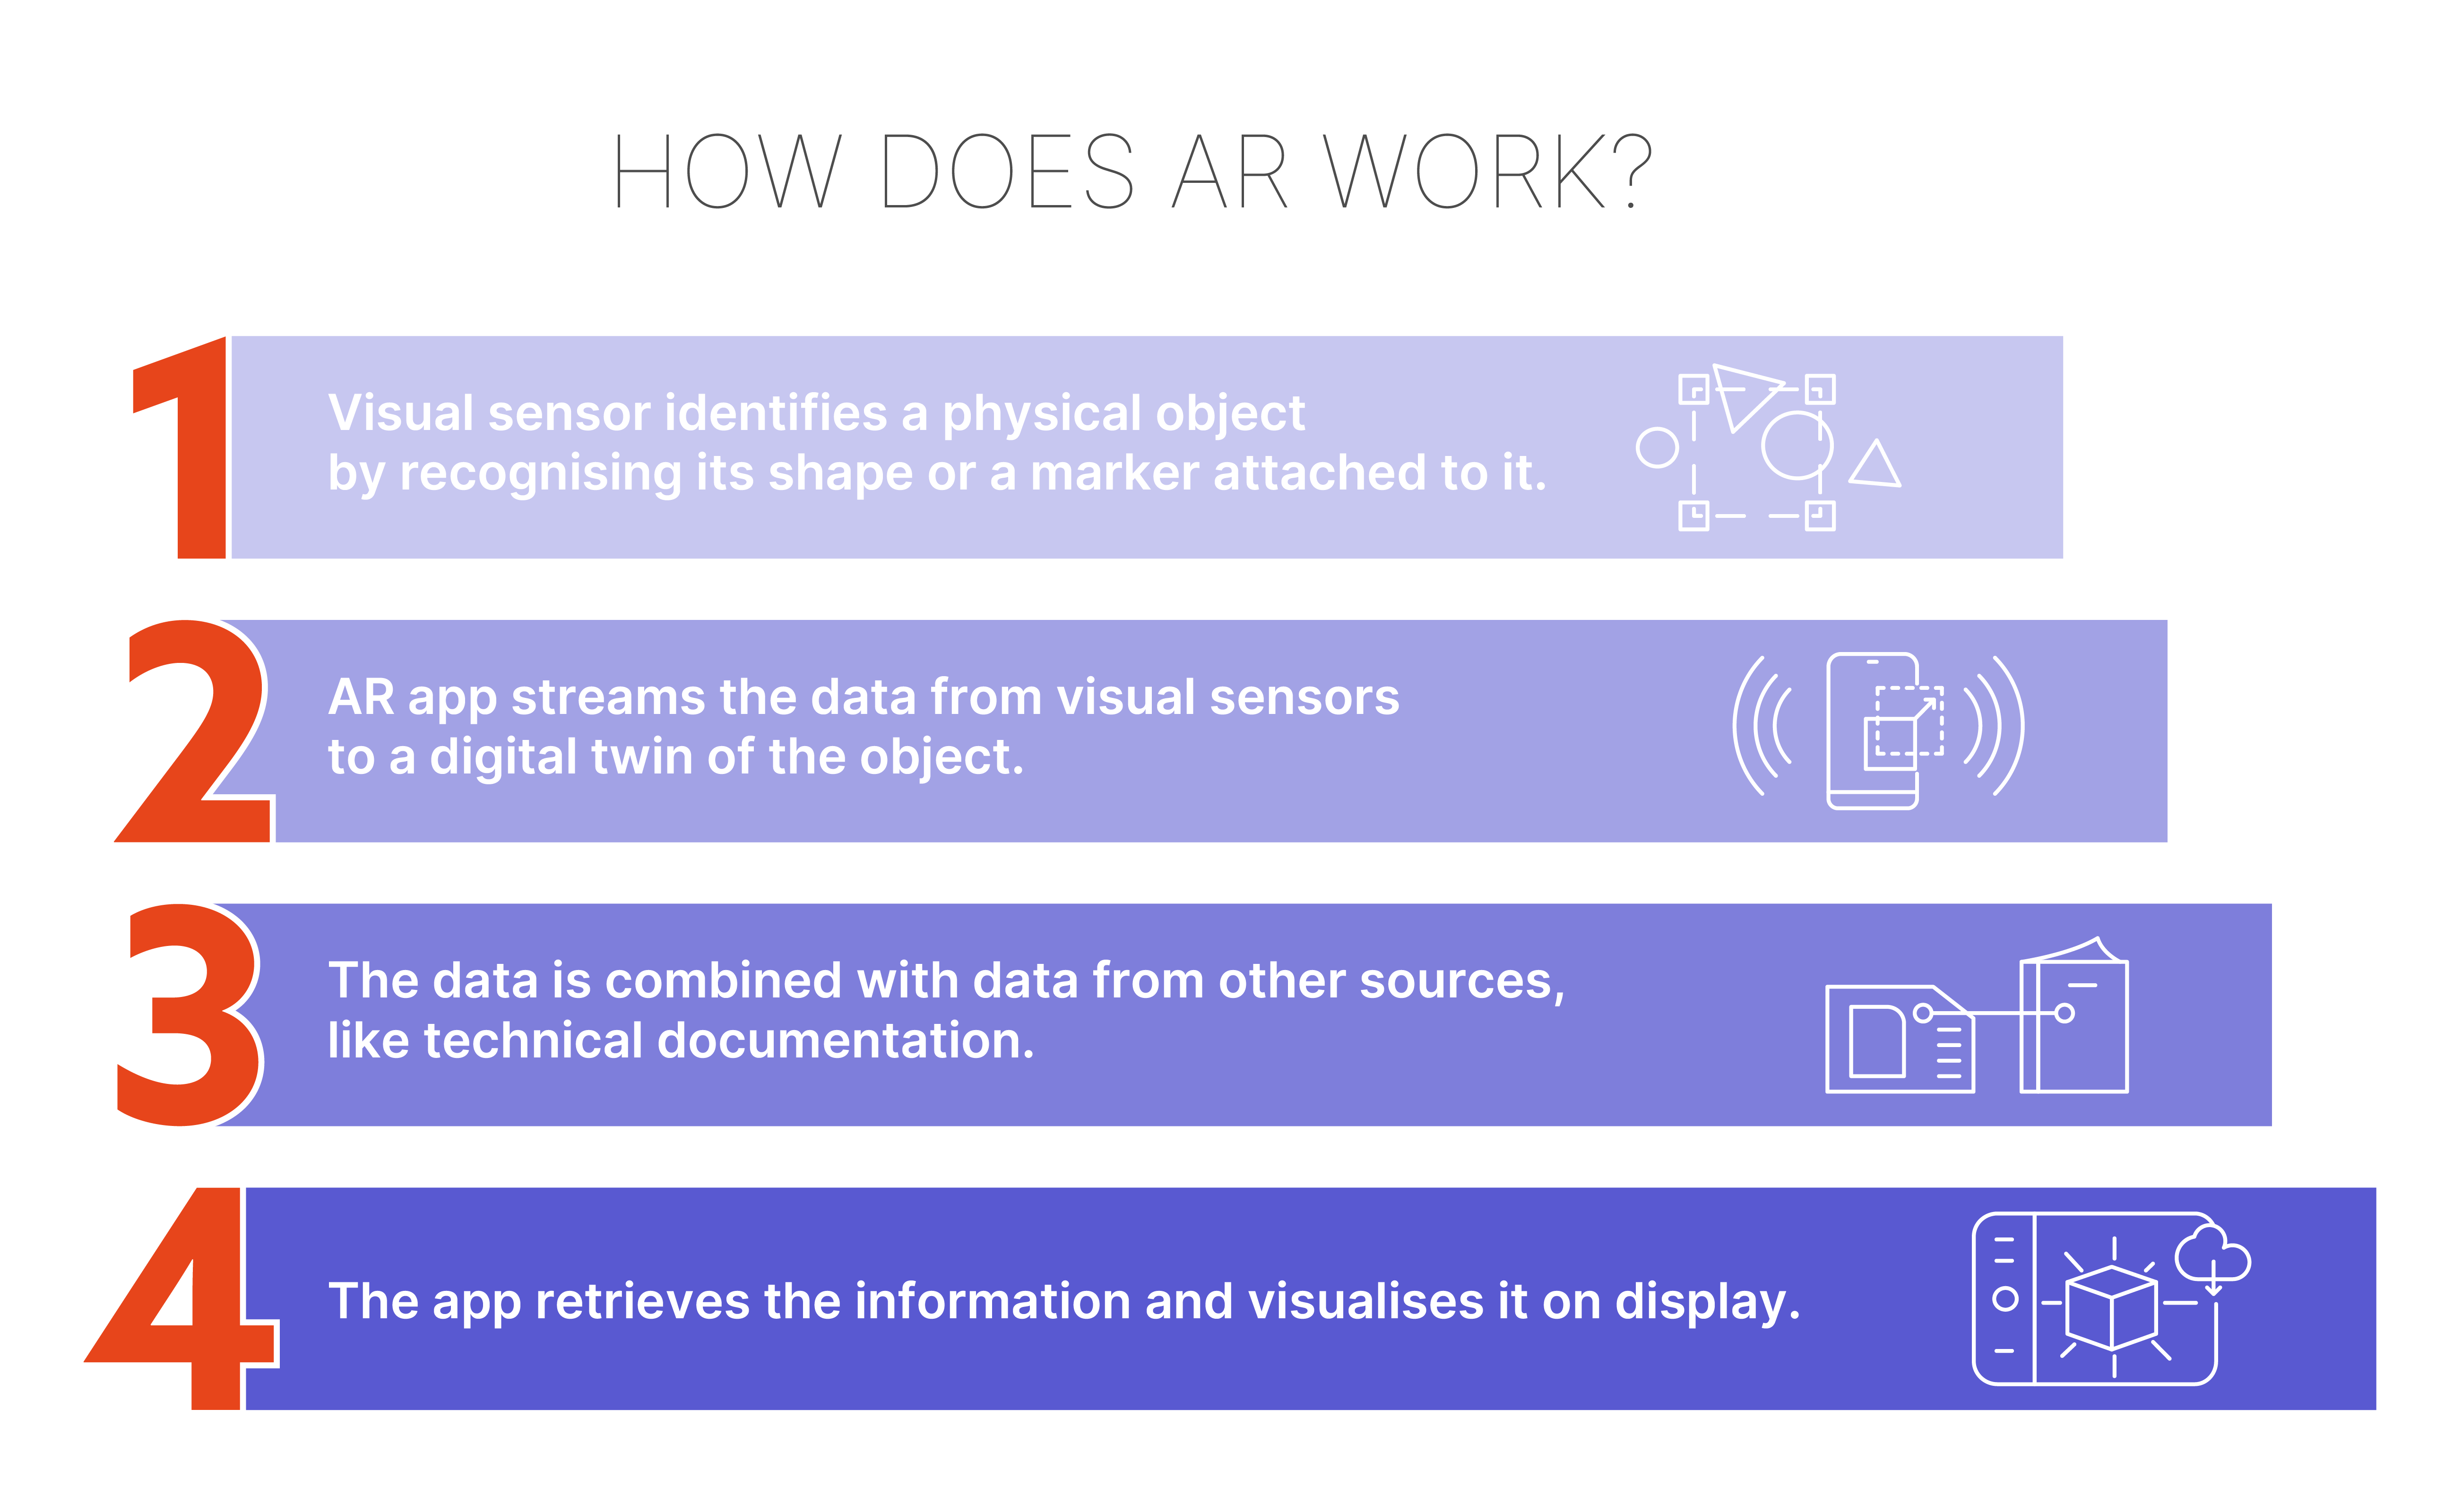 How does AR work?